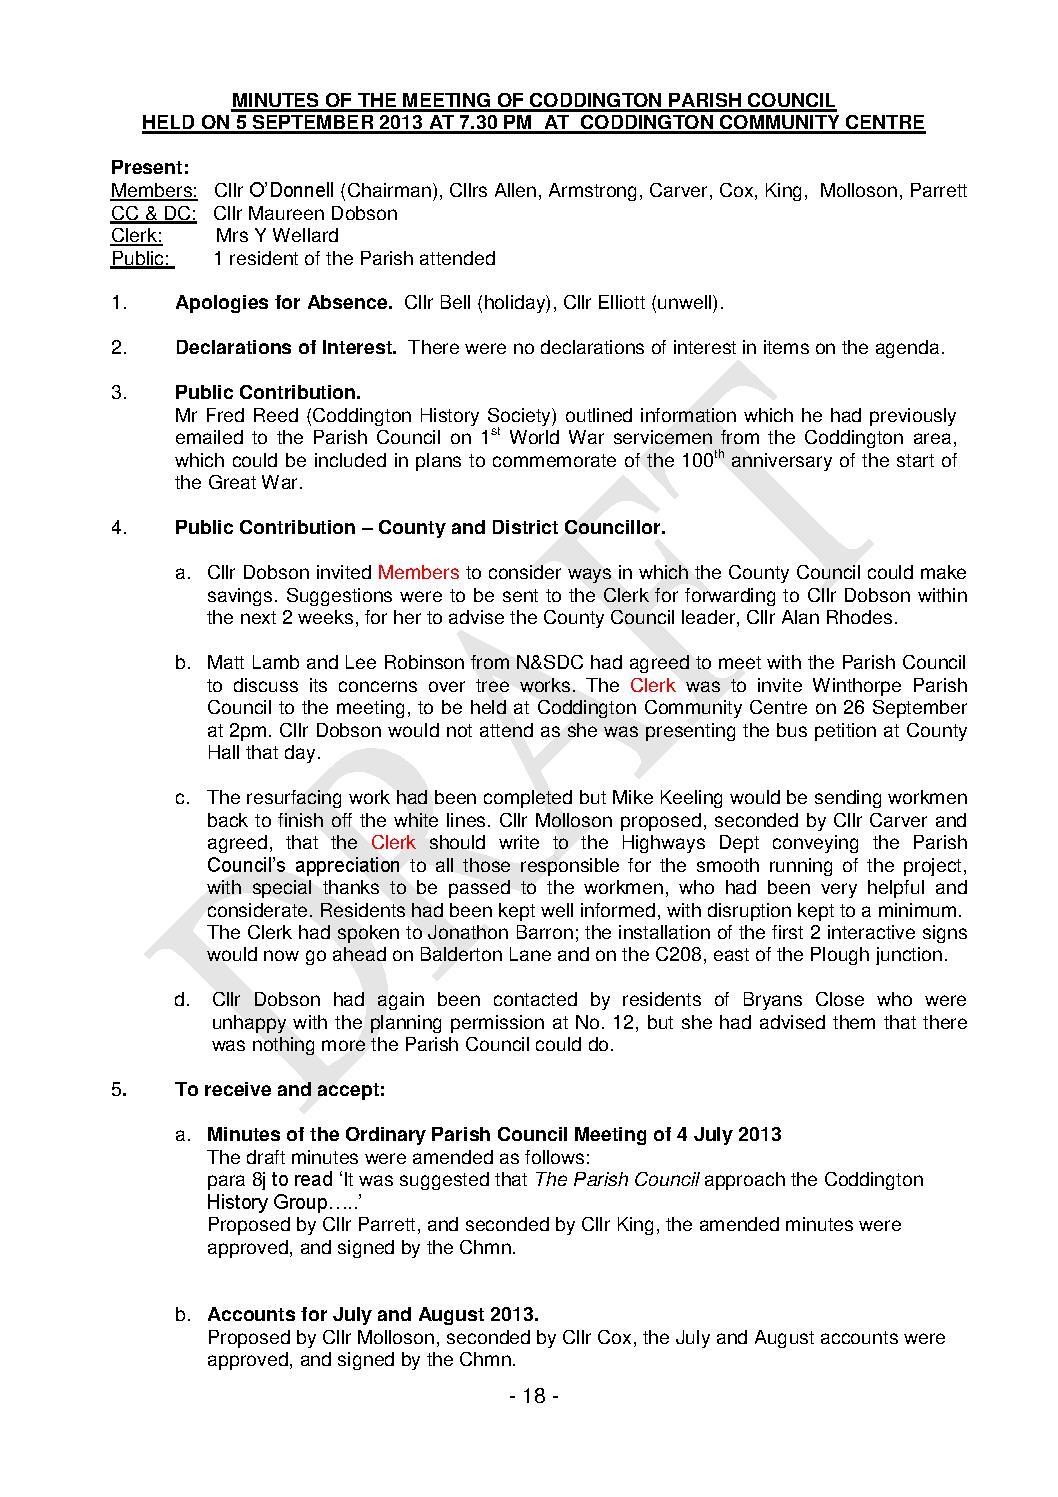 Parish Council Meeting 5 September 2013 Minutes